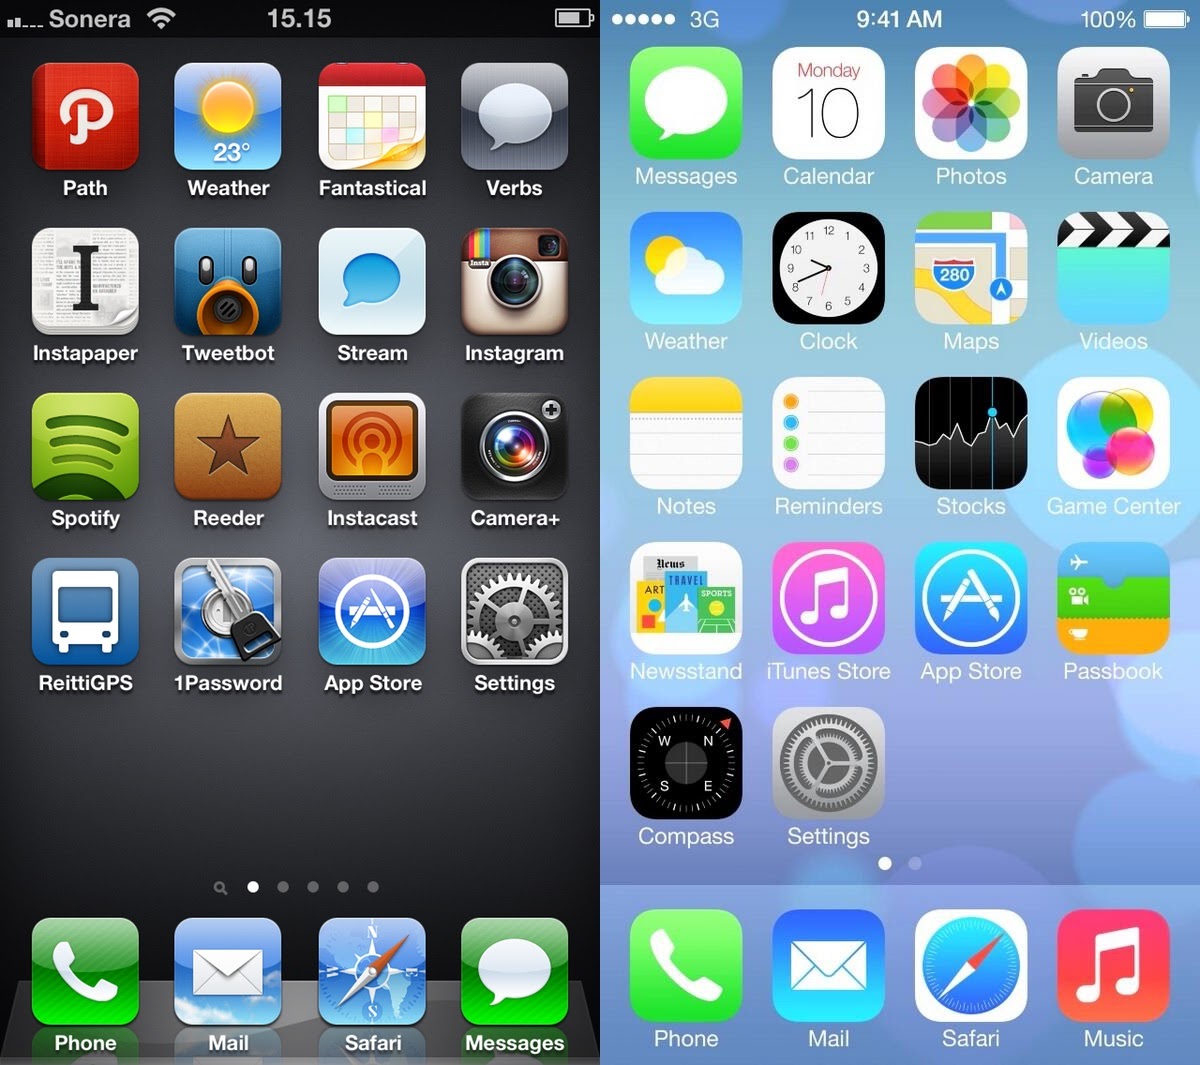 iOS 6 vs iOS 7